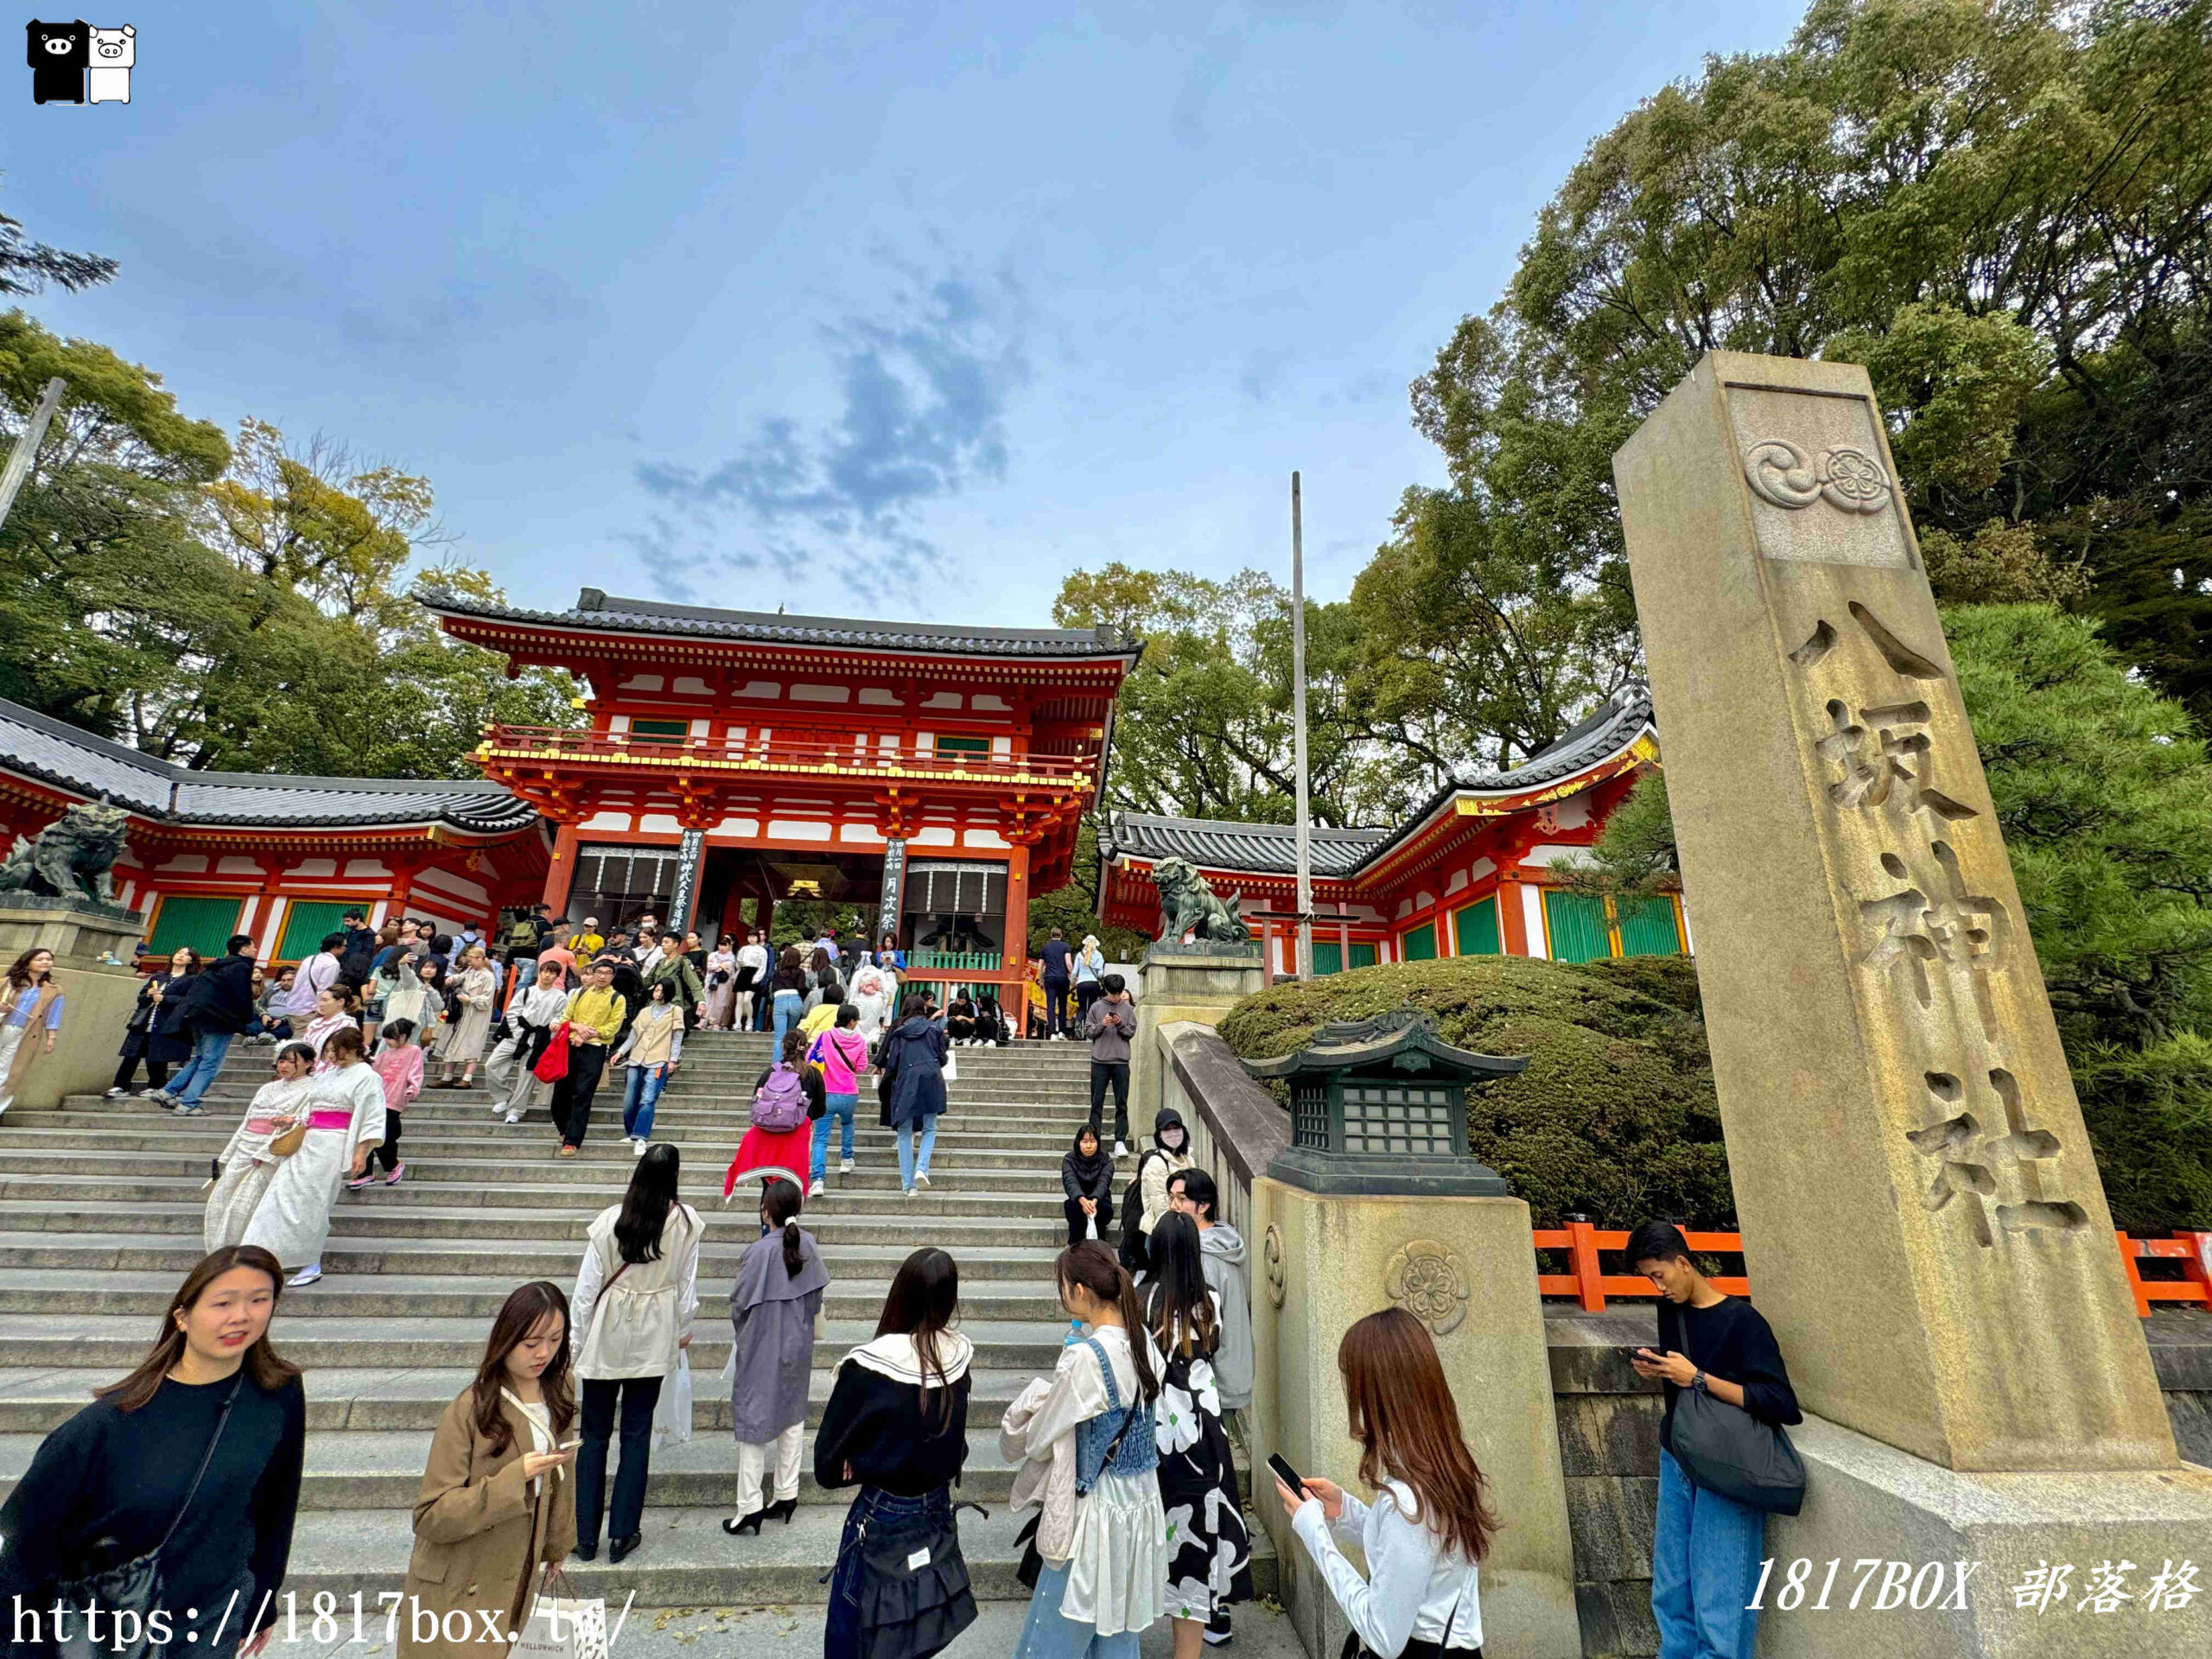 【京都景點】日本三大祭「祇園祭」發祥地。京都八坂神社 @1817BOX部落格